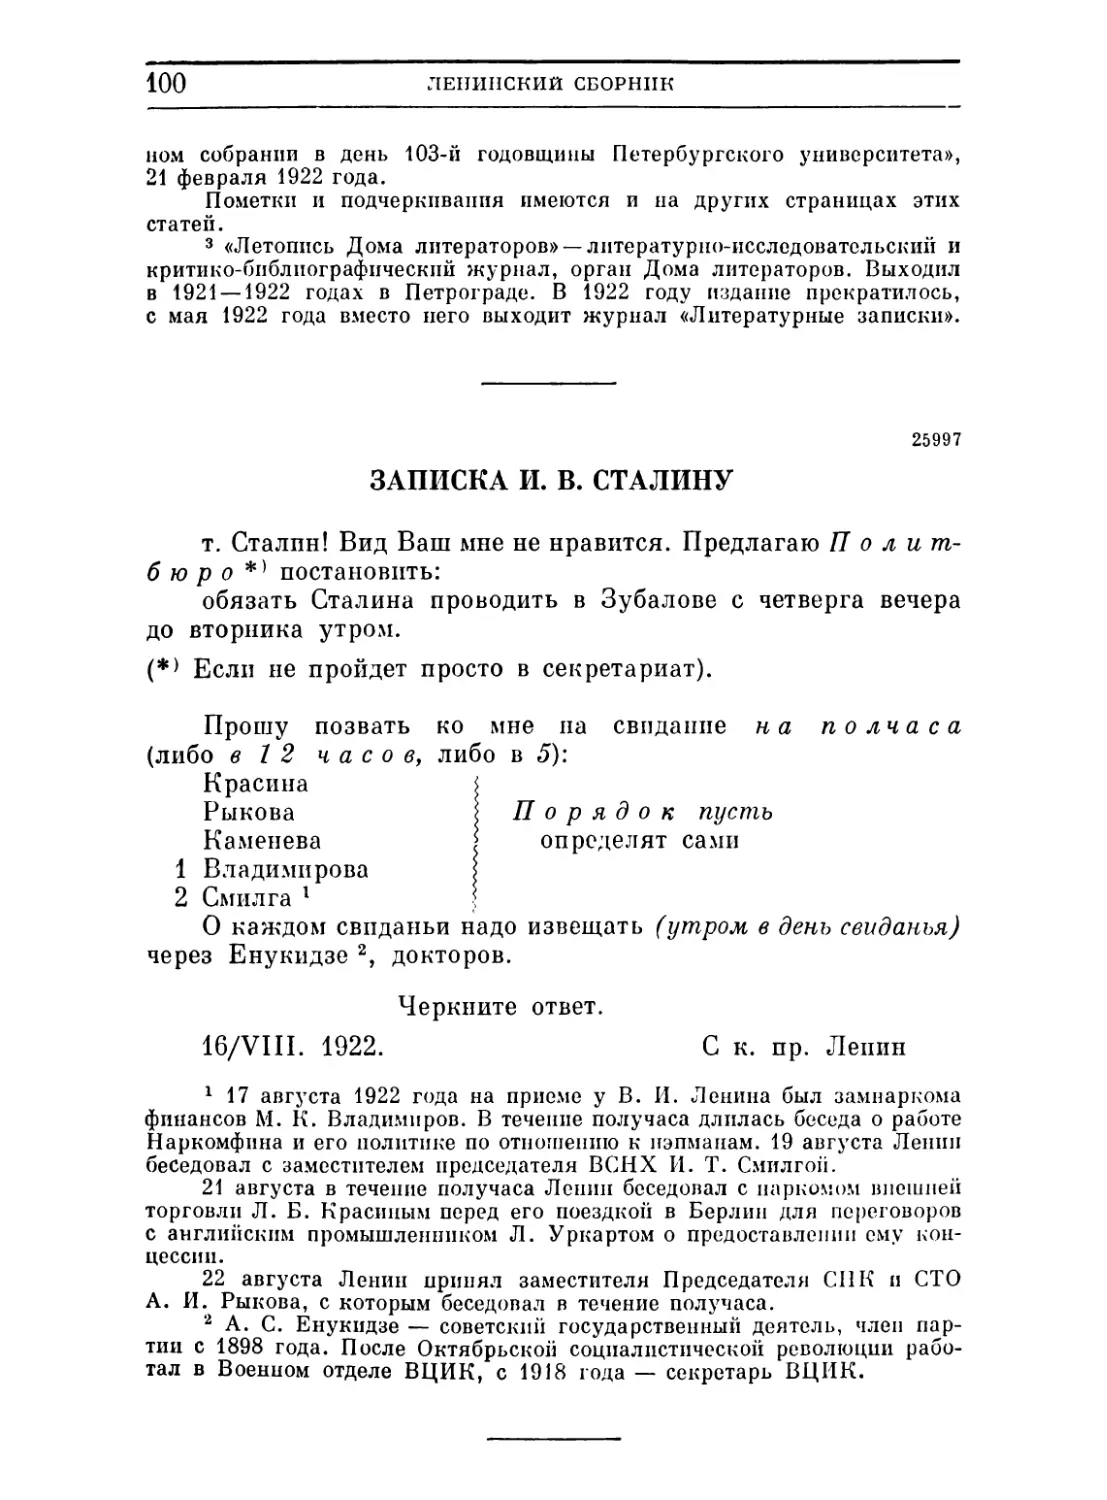 Записка И. В. Сталину. 16 августа 1922 .